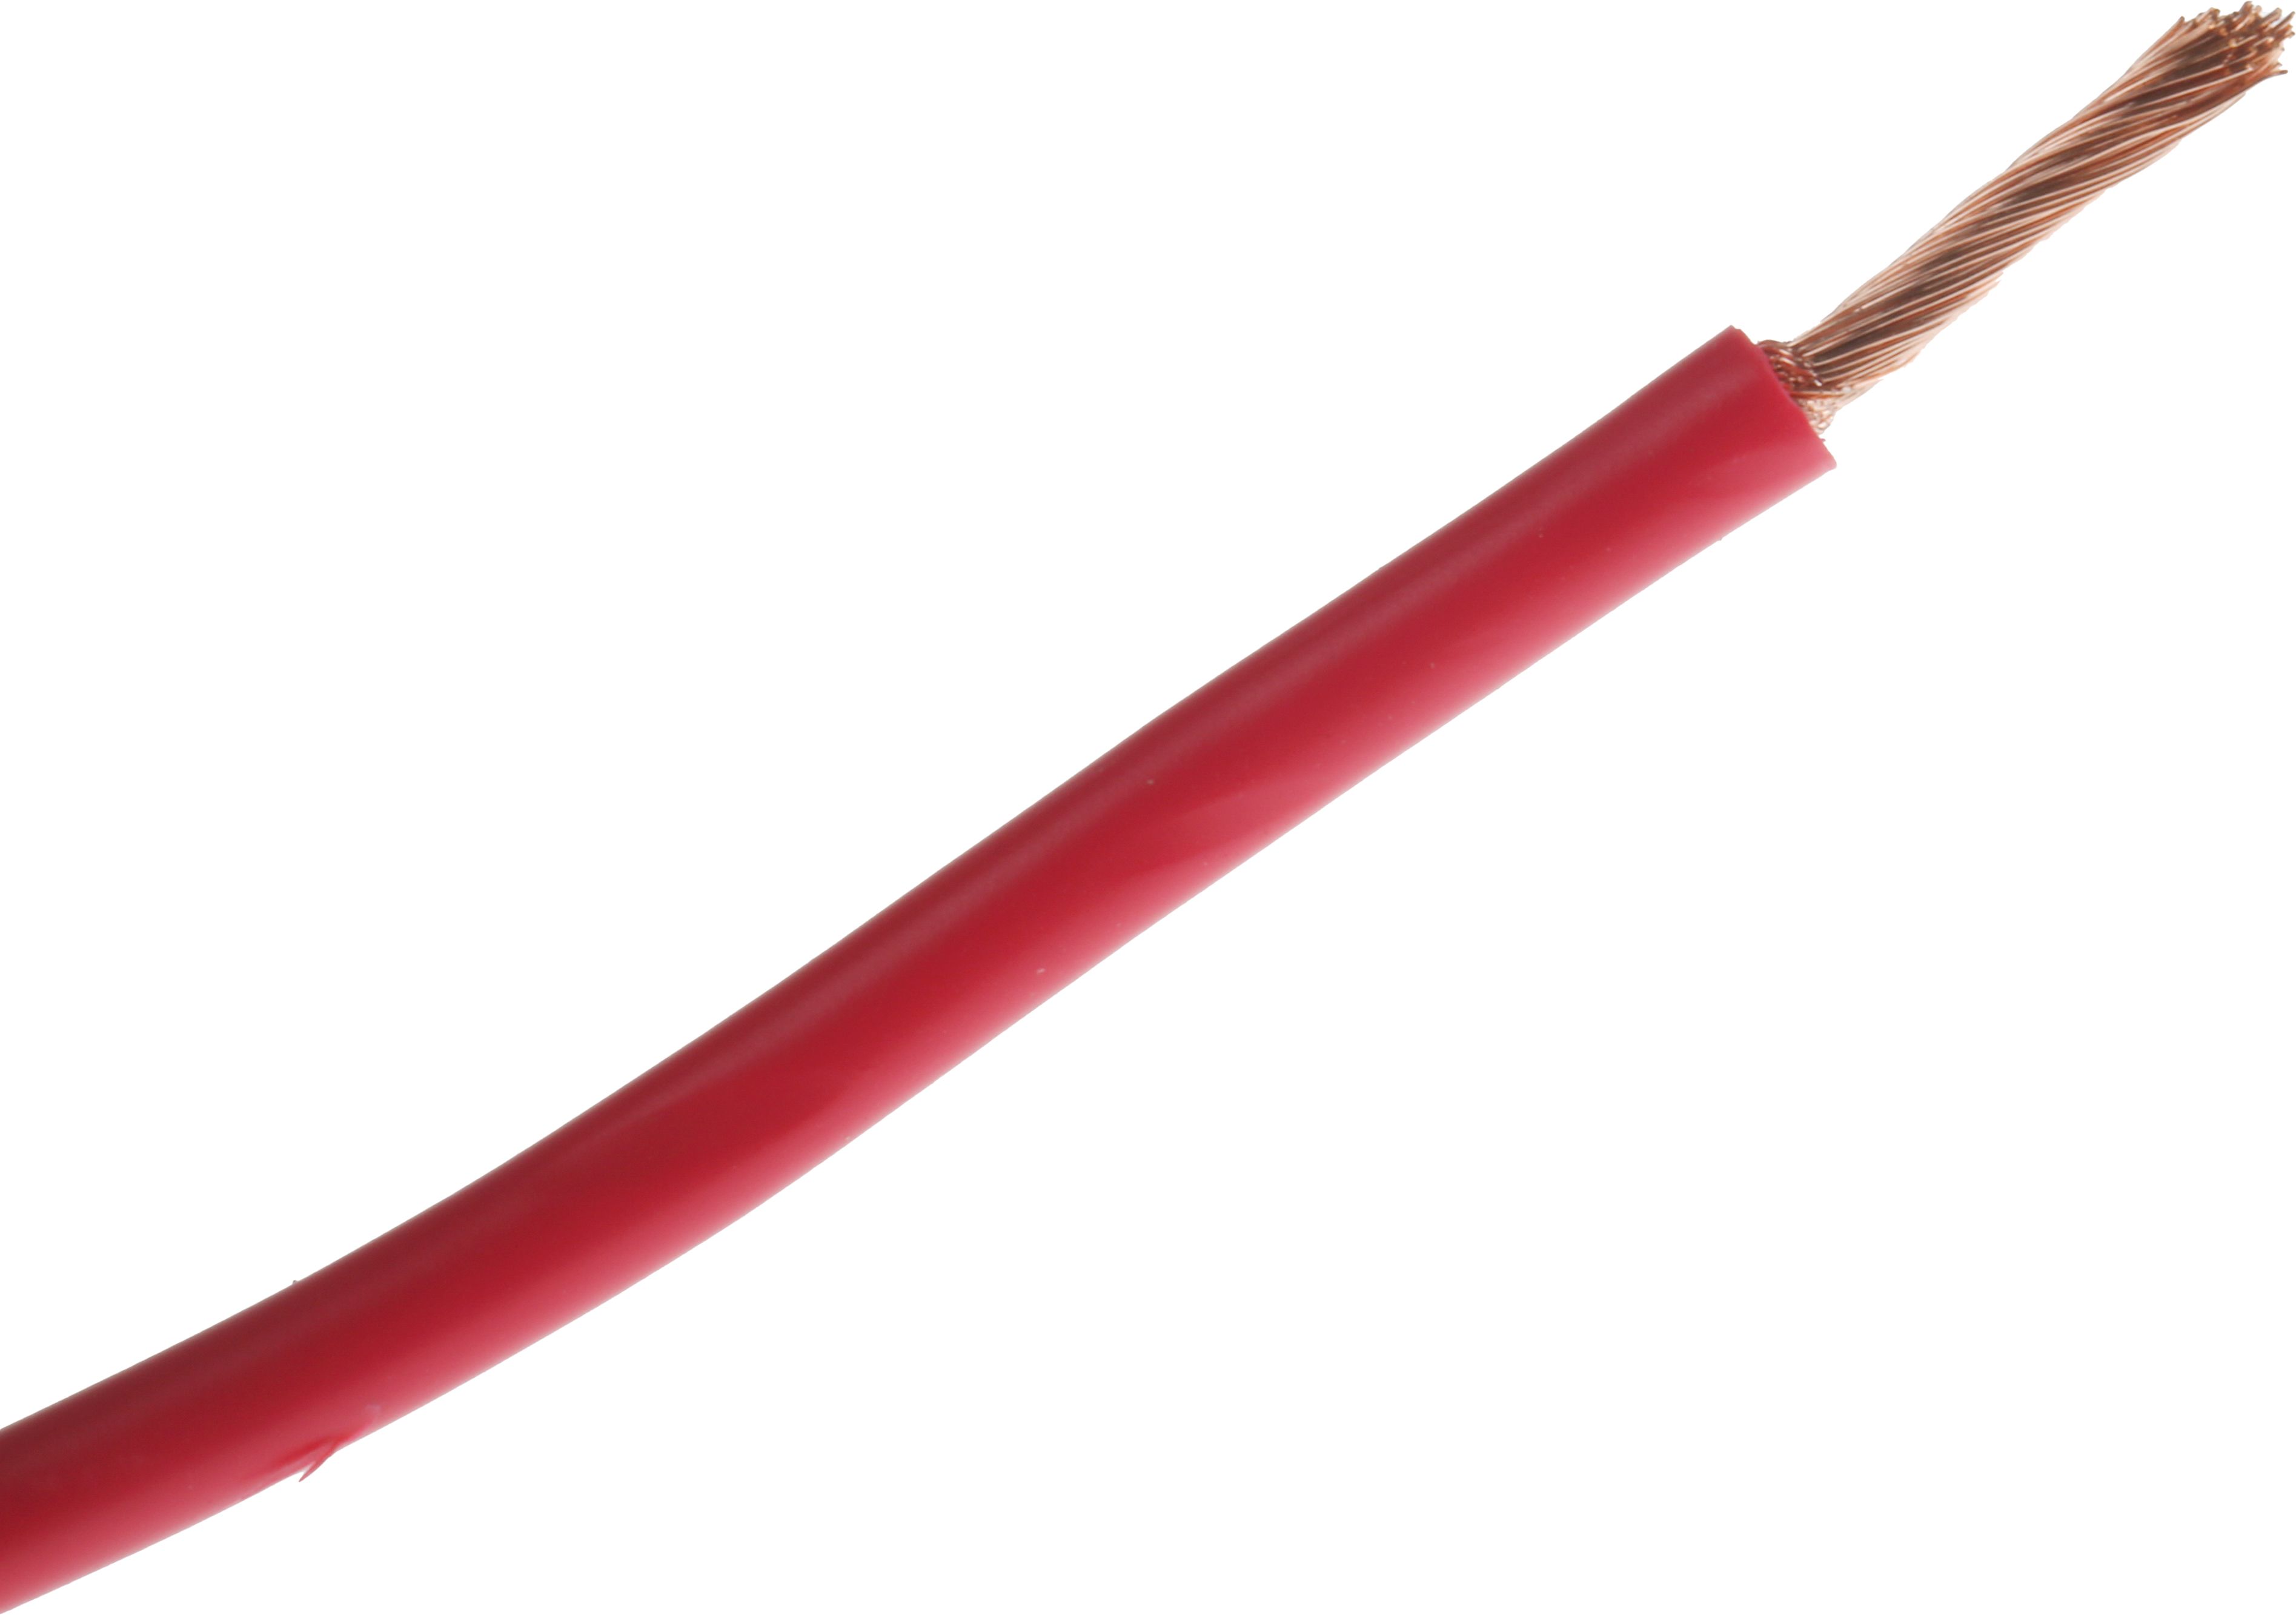 RS PRO 2 mm² Rød Ledning til brug i biler, ledertråde: 115/0,15 mm, 600 V, 30m